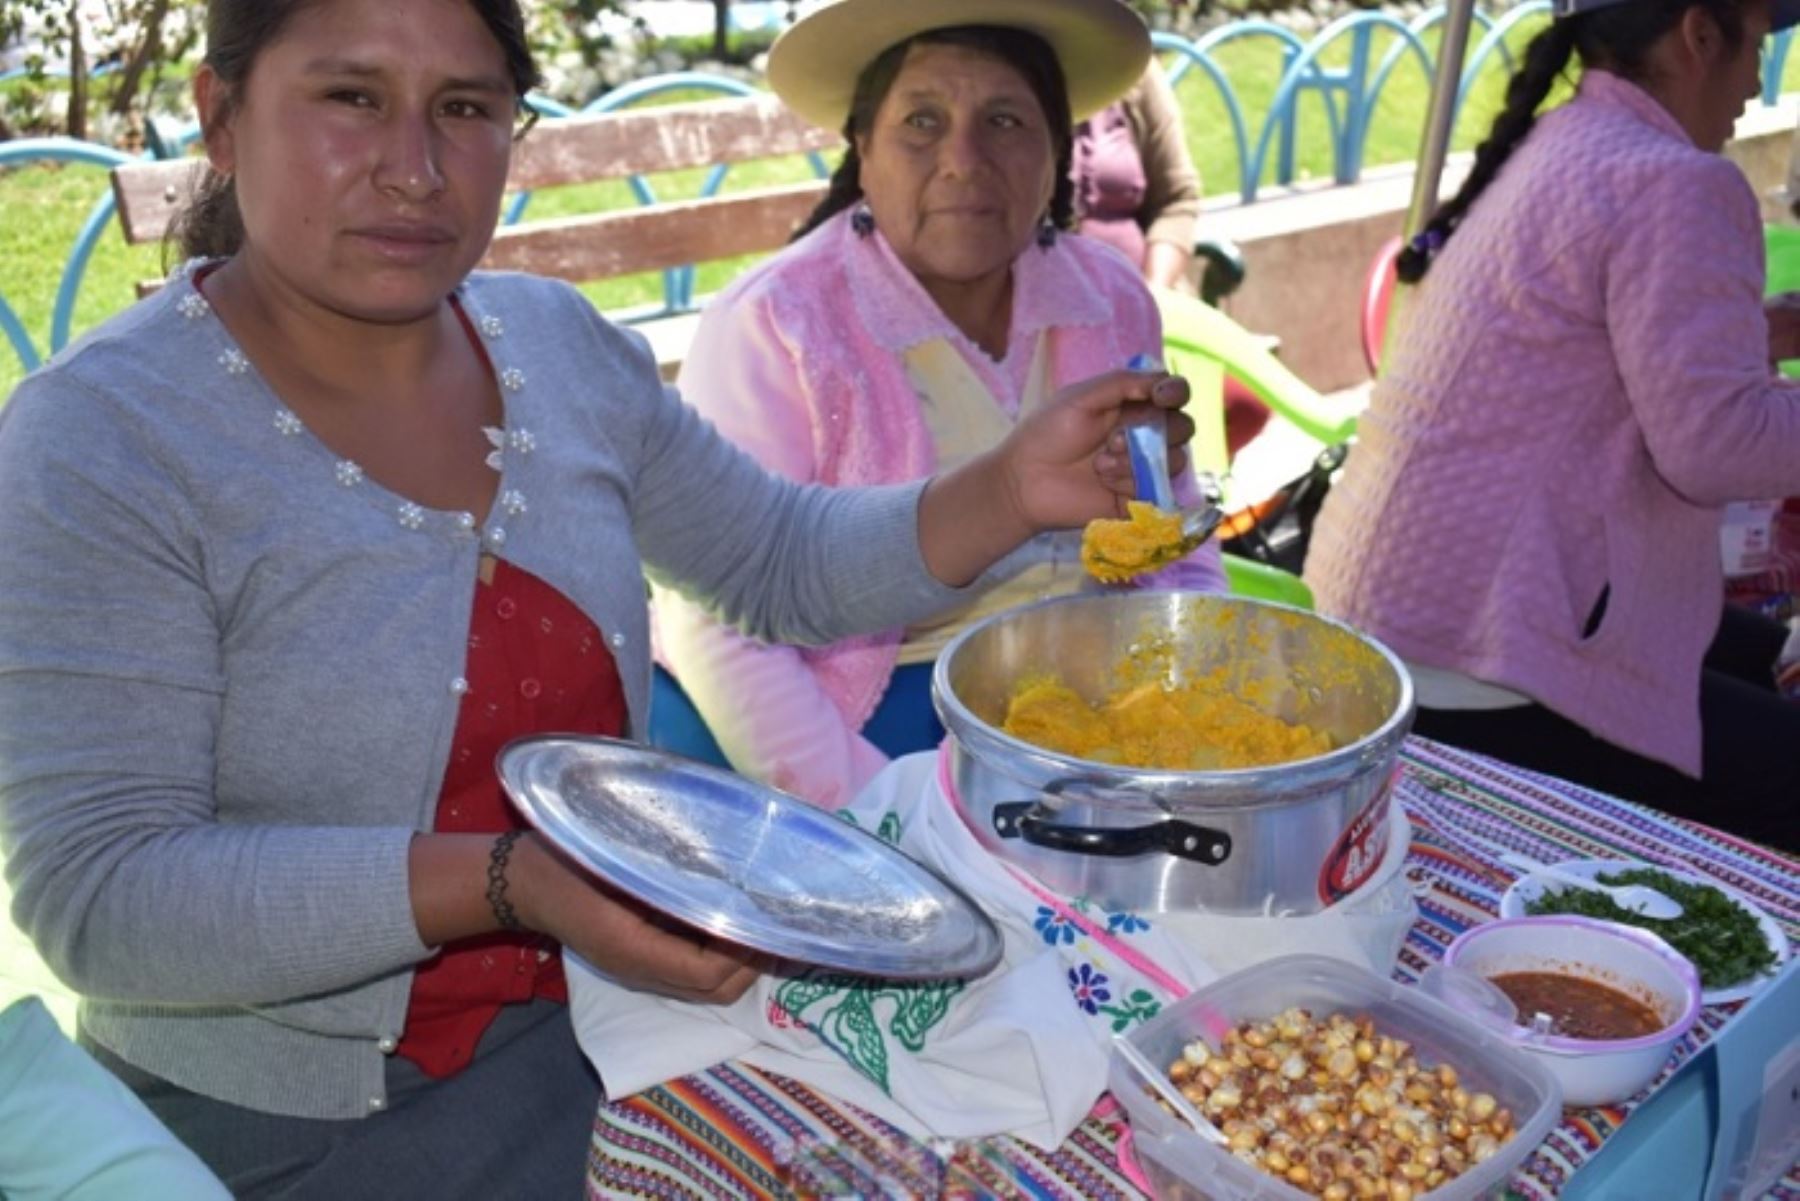 Considerado uno de los super alimentos del futuro, el tarwi es una legumbre con alto porcentaje de proteína que se cultiva y consume en el callejón de Huaylas y en toda la región Áncash, pero también en Cajamarca, el valle del Mantaro, Ayacucho, Cusco y Puno.